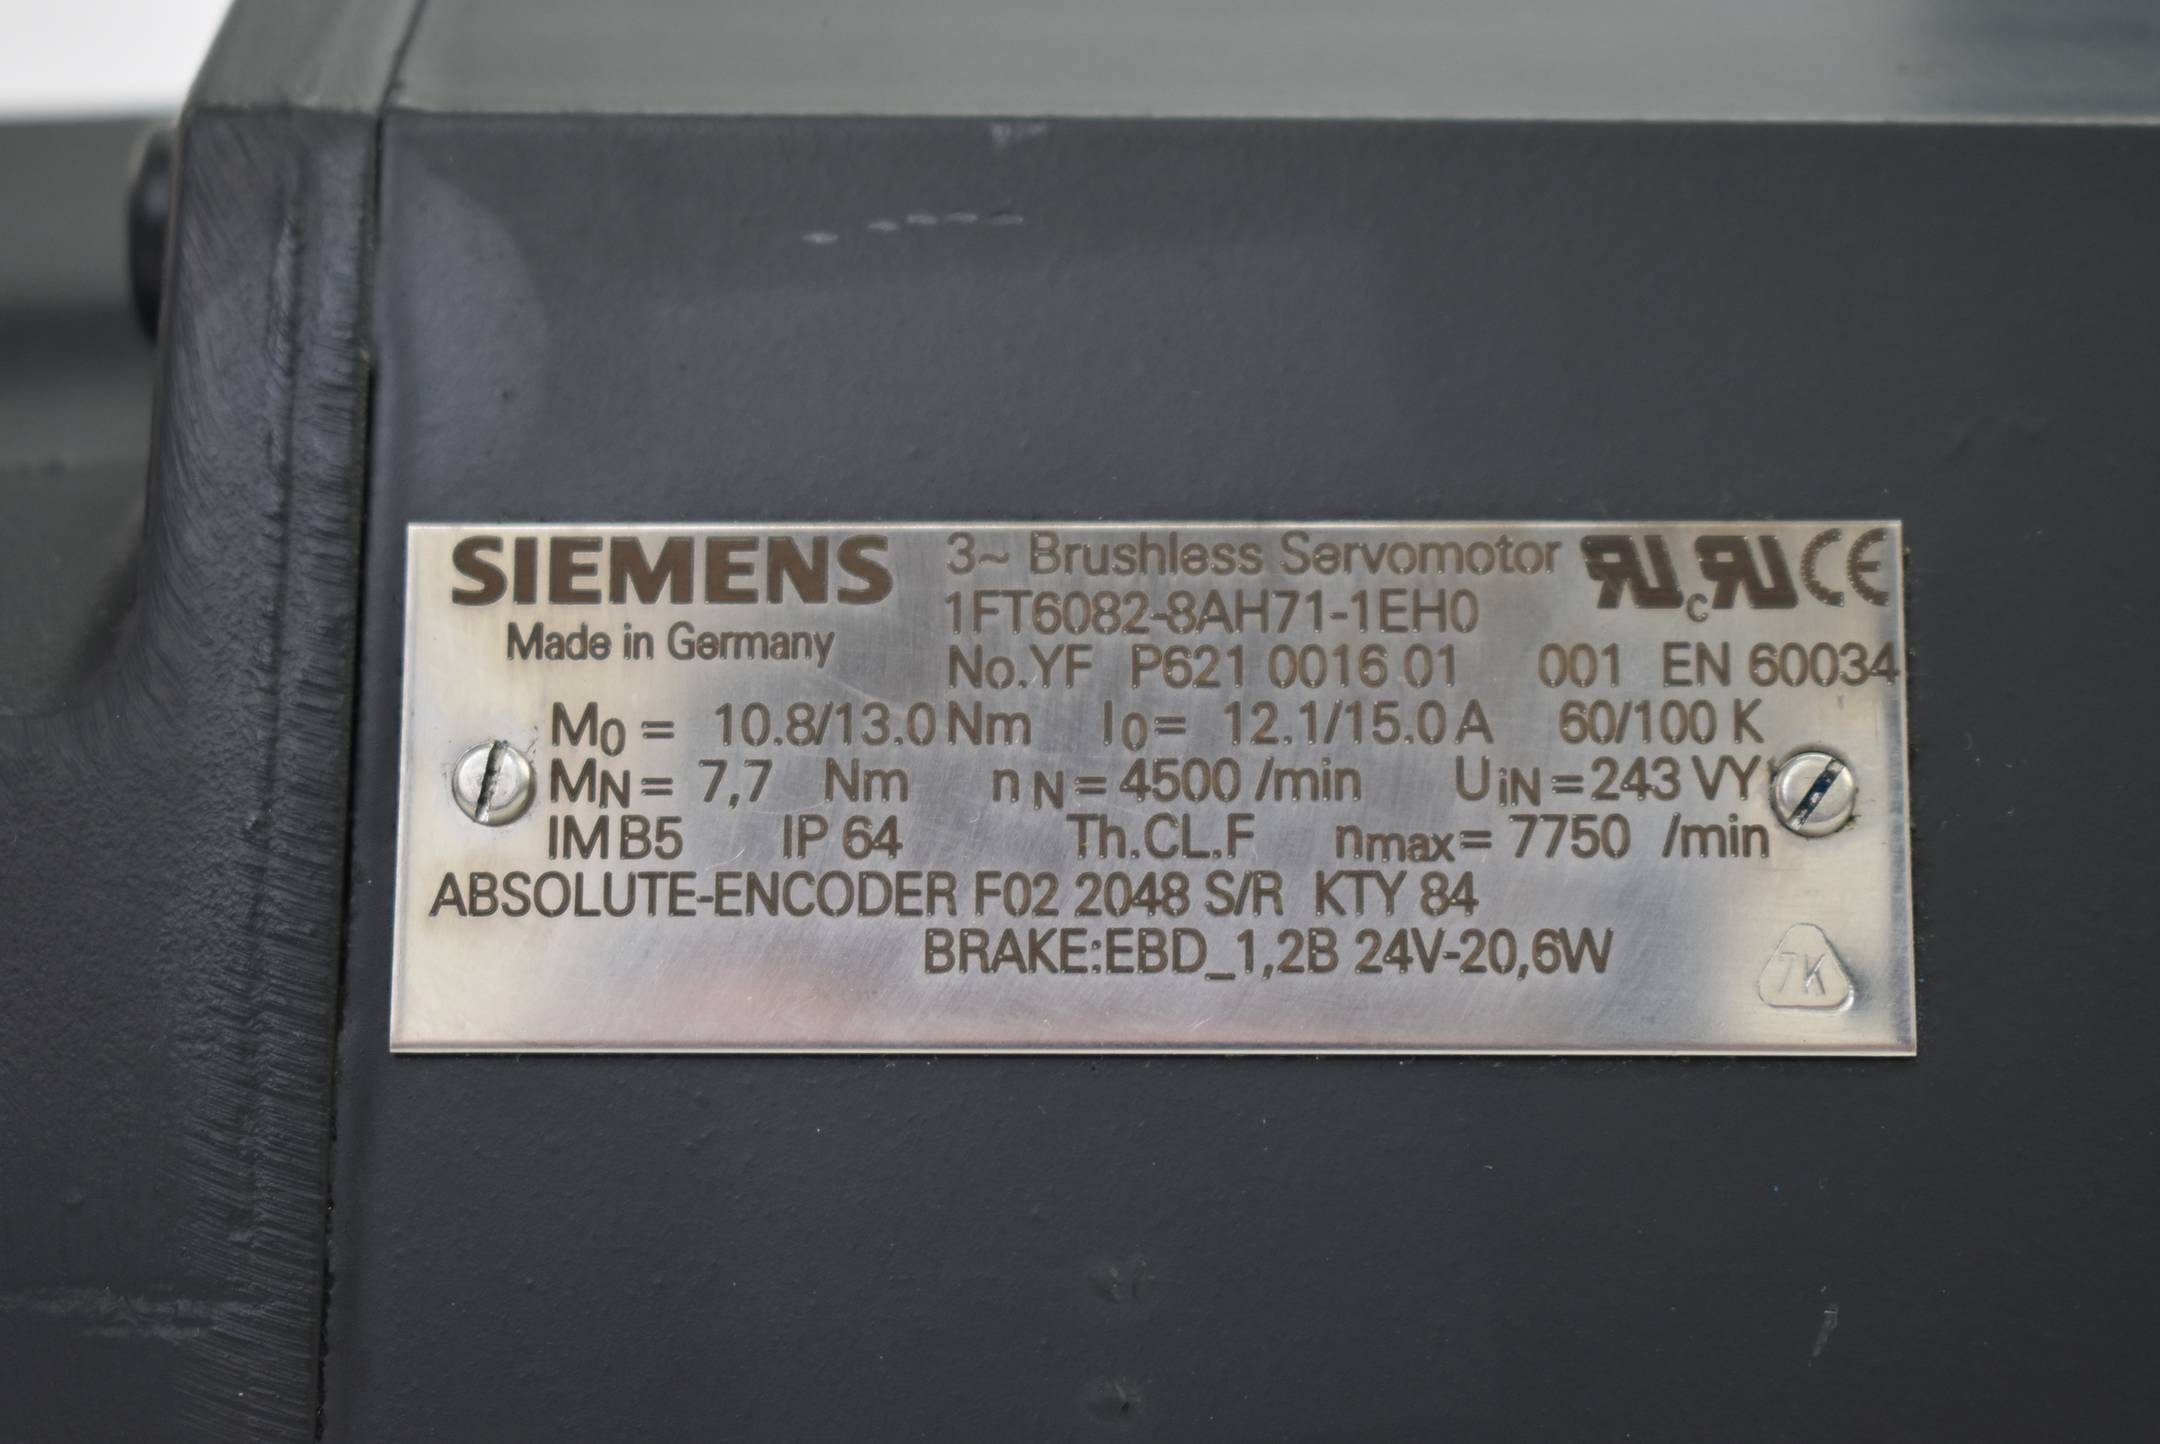 Siemens 3~ Brushless Servomotor 1FT6 082-8AH71-1EH0 ( 1FT6082-8AH71-1EH0 )